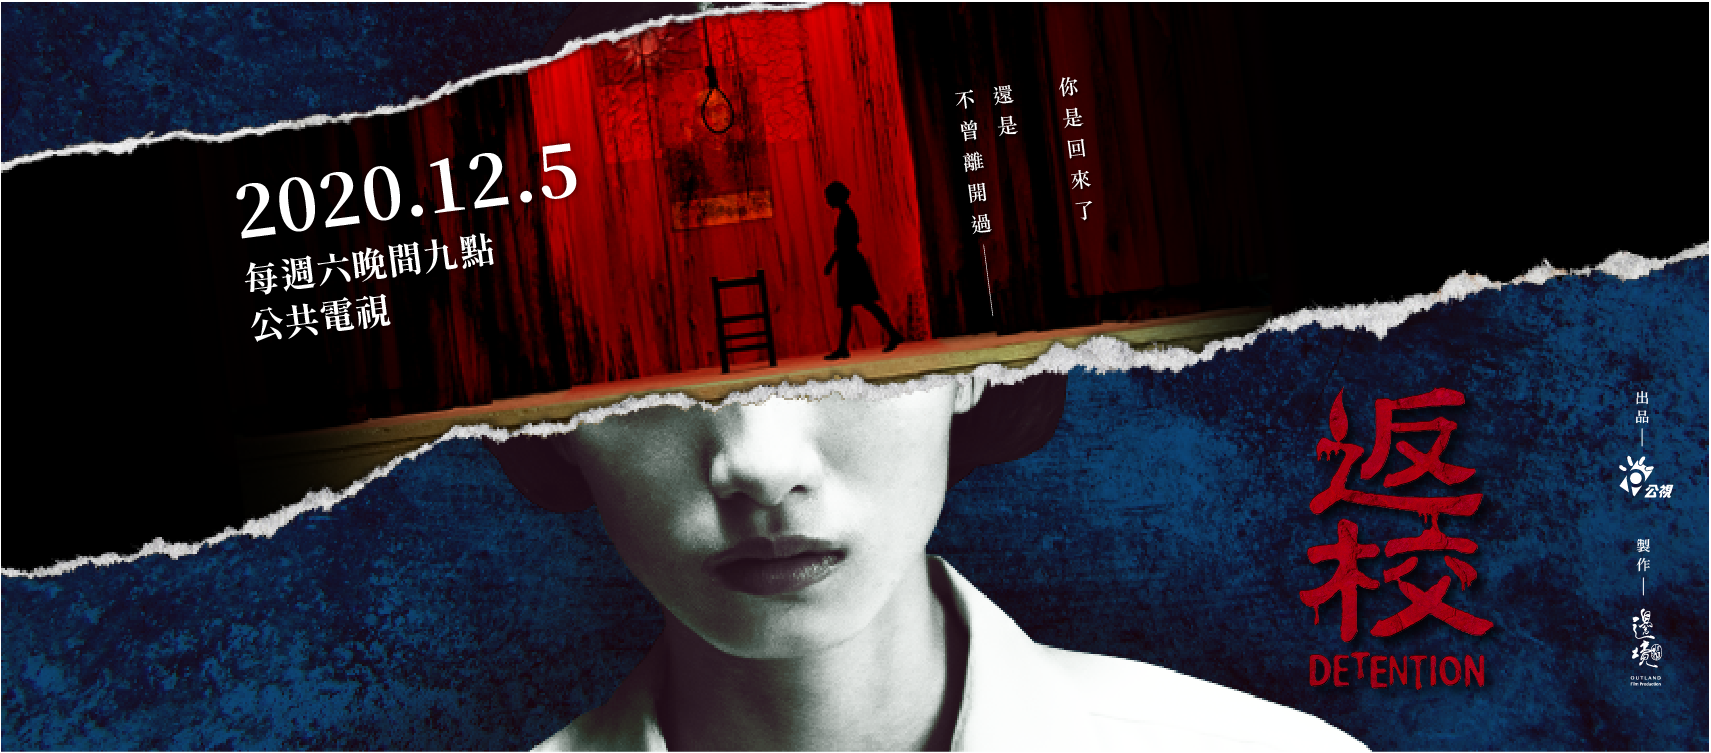 台湾産ホラーゲーム『返校 -Detention-』のドラマ版のトレイラー公開。台湾で現地時間の12月5日21時より全8話で放送予定_001